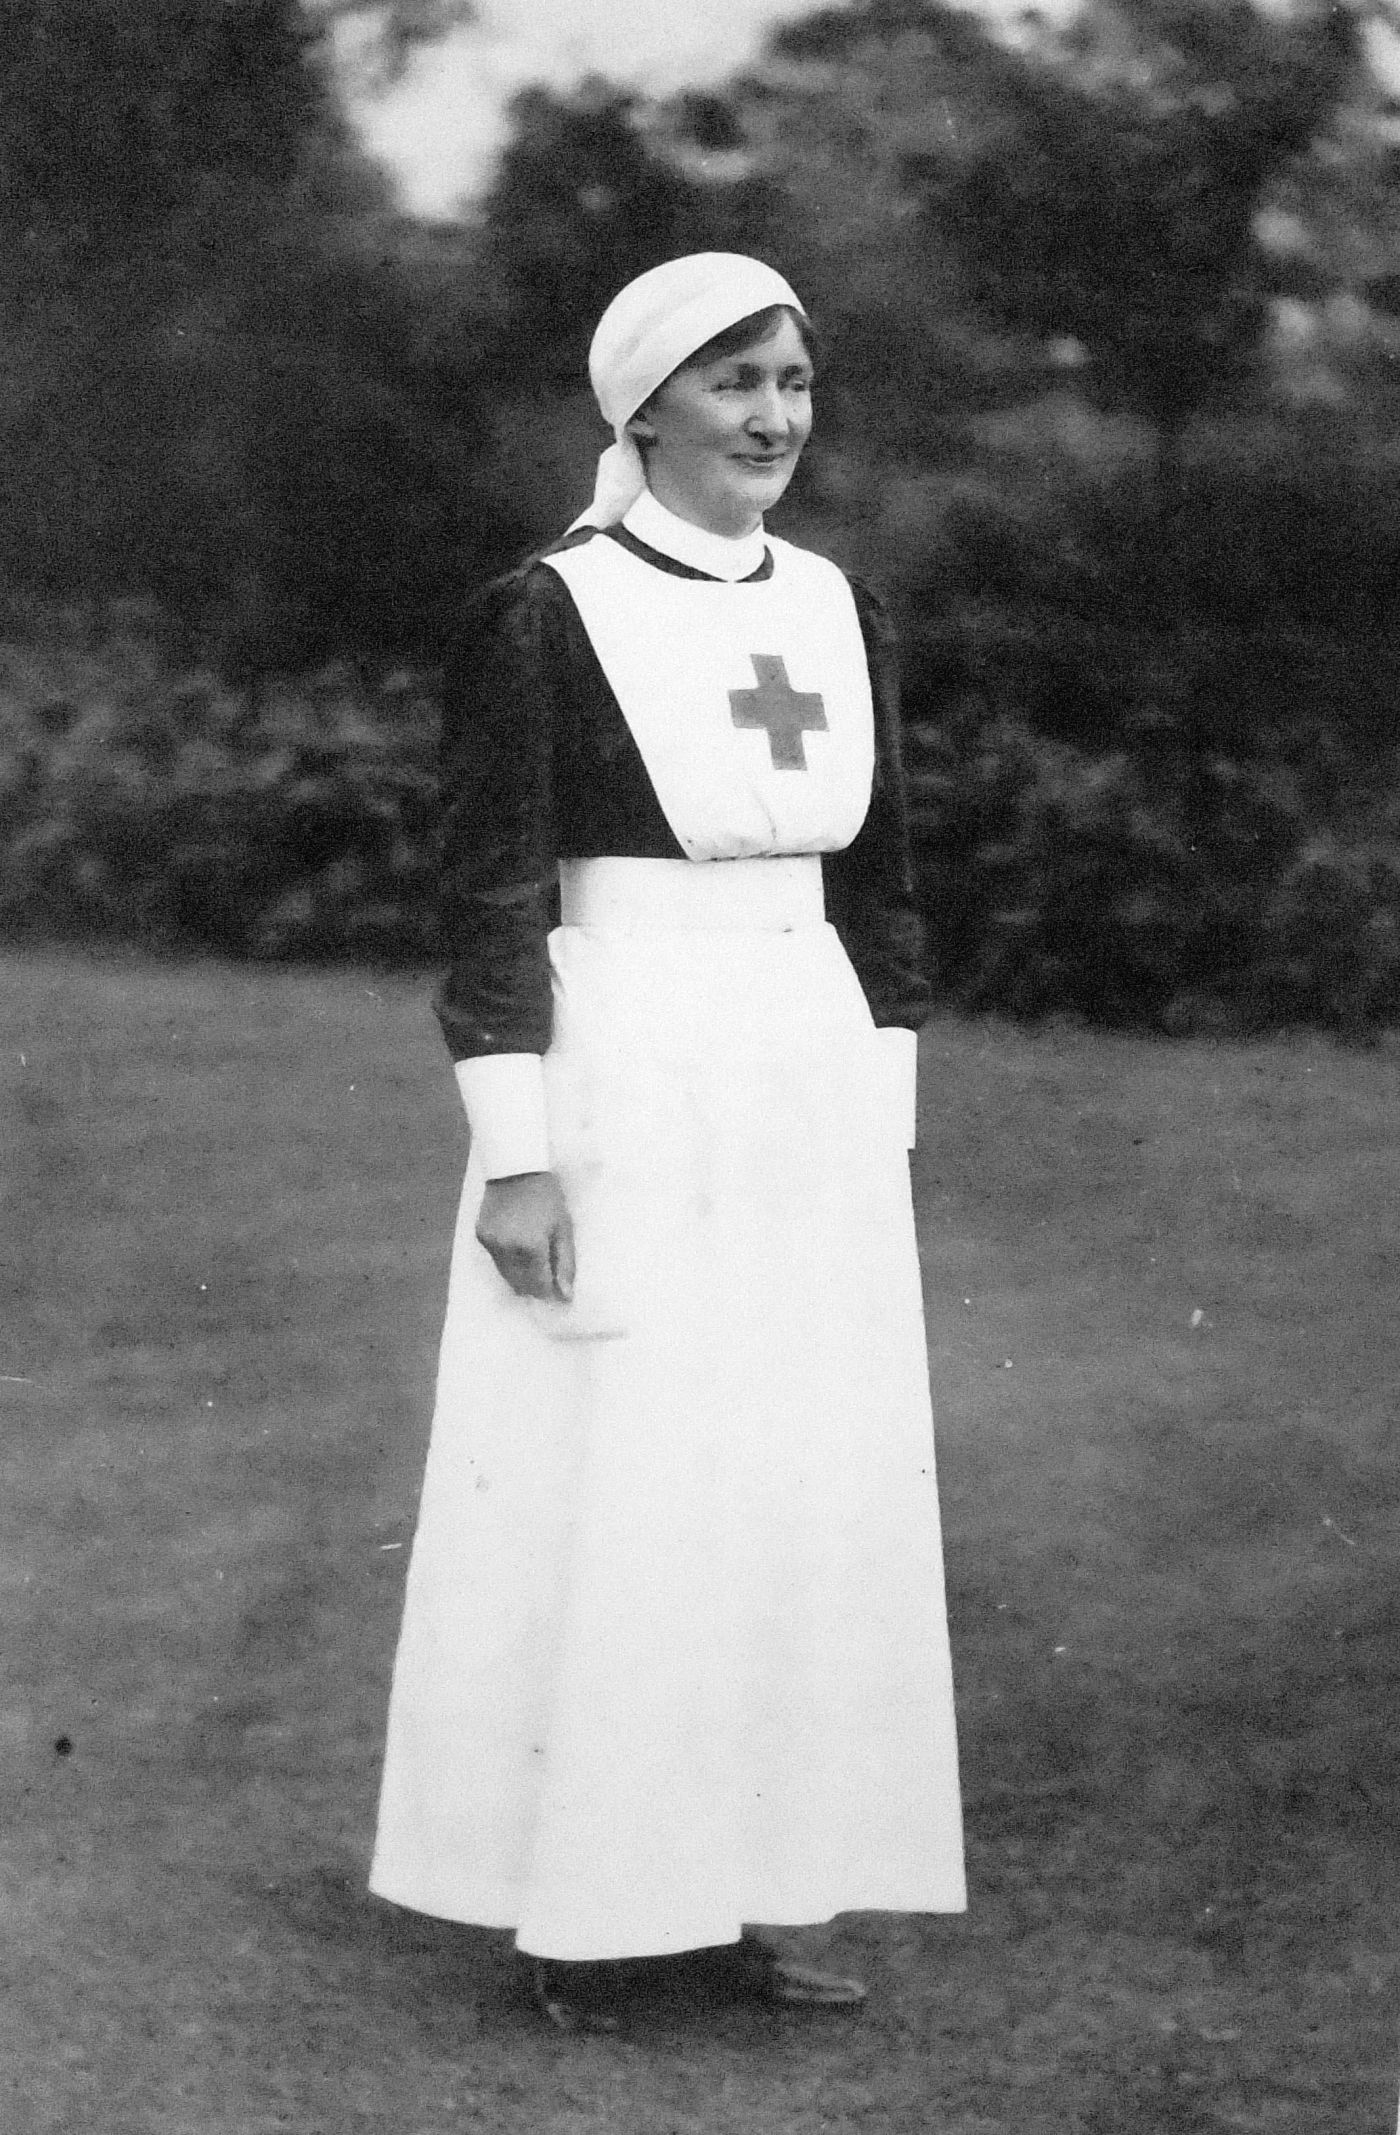 Halloughton Nurse